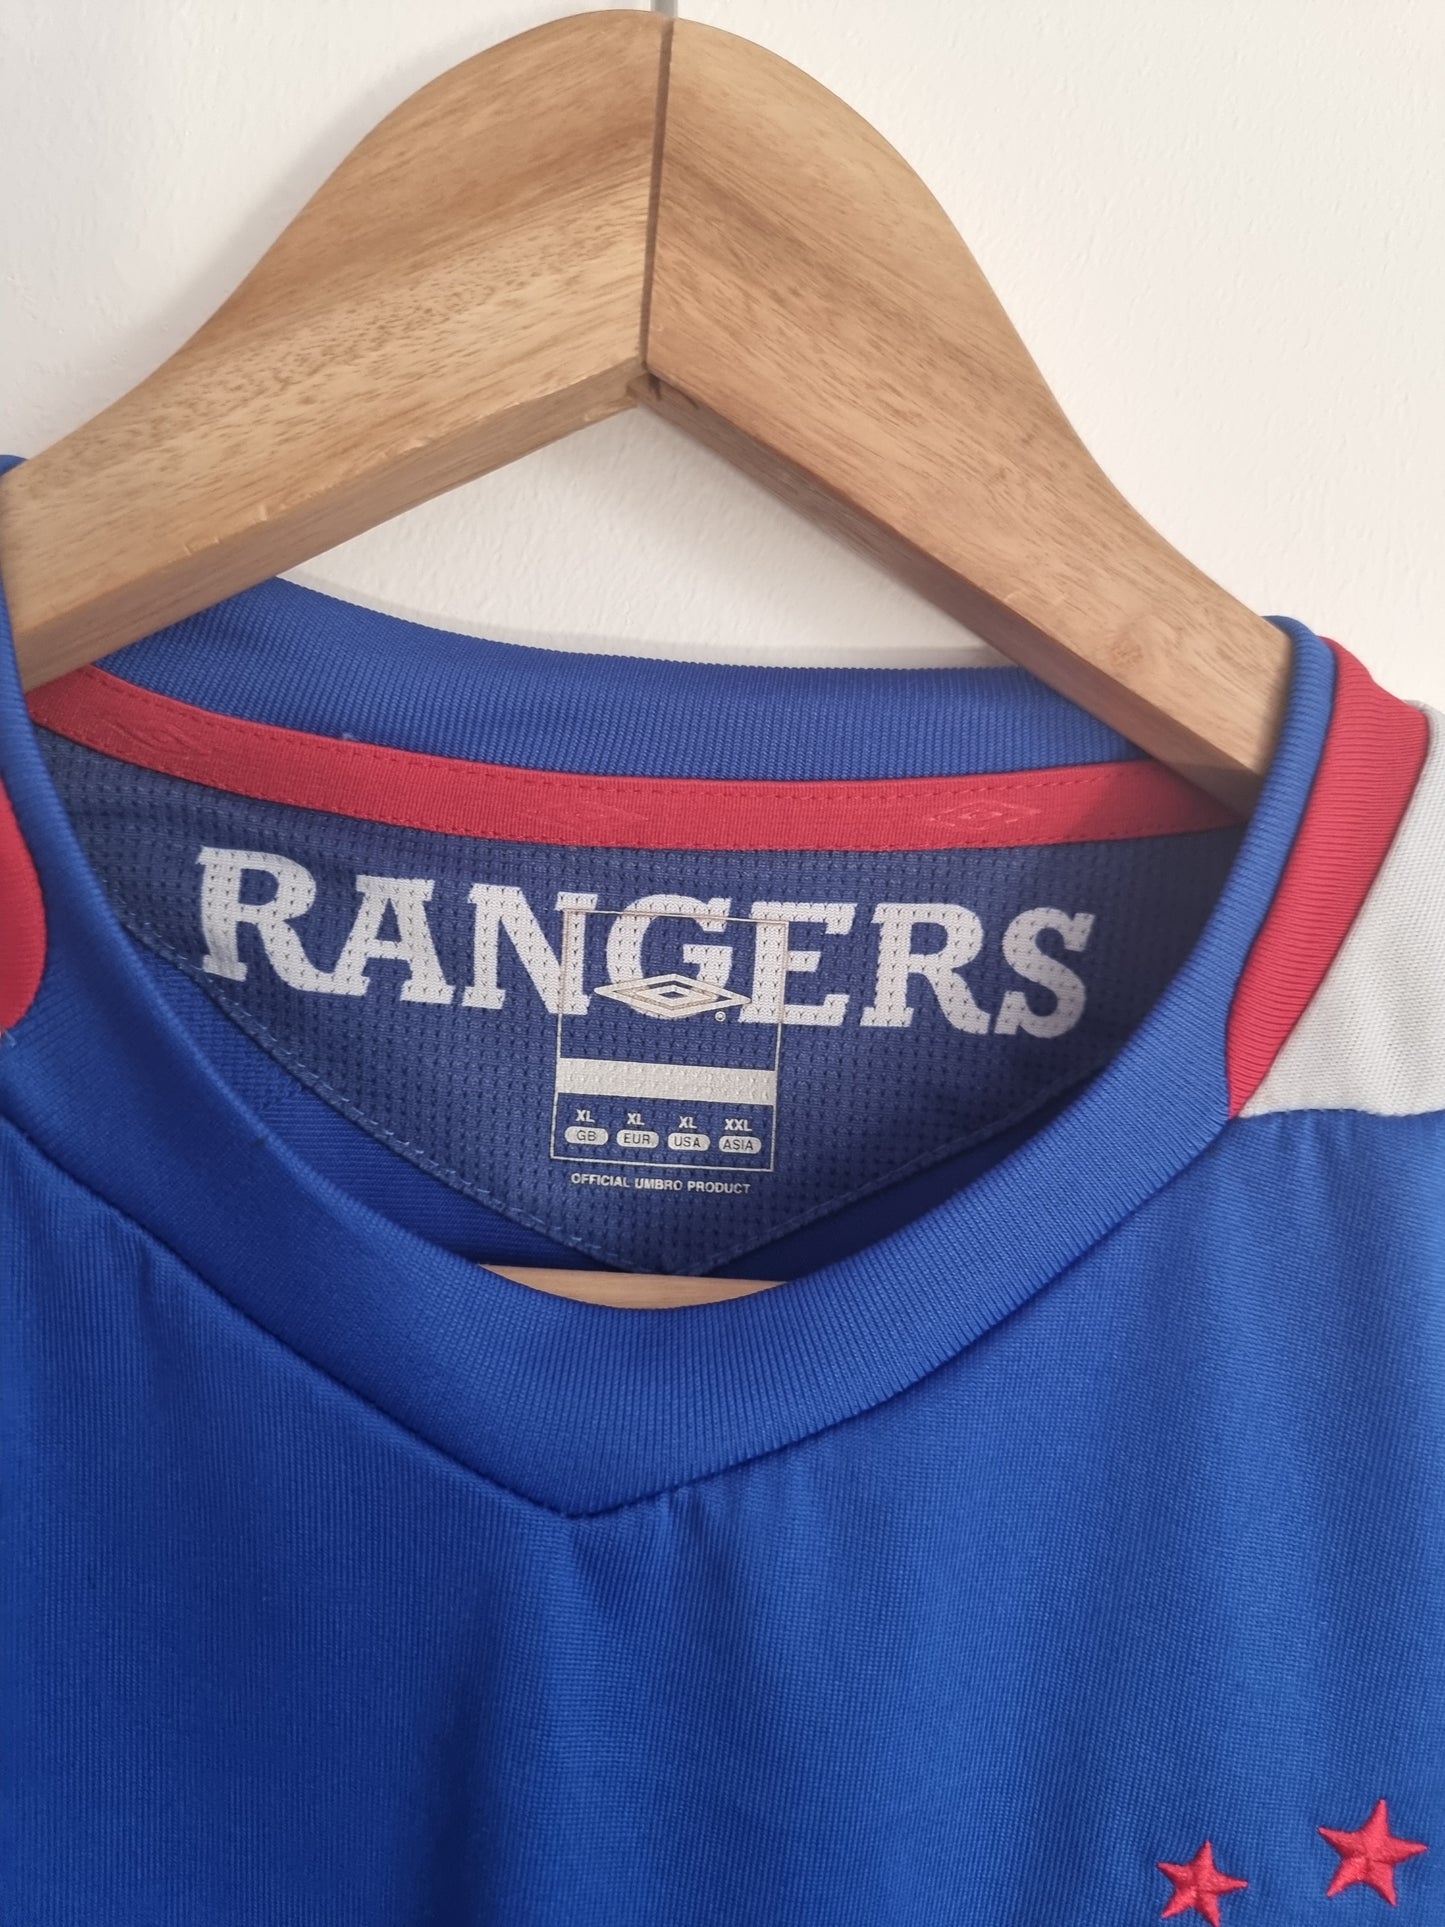 Umbro Rangers 06/07 Home Shirt XL